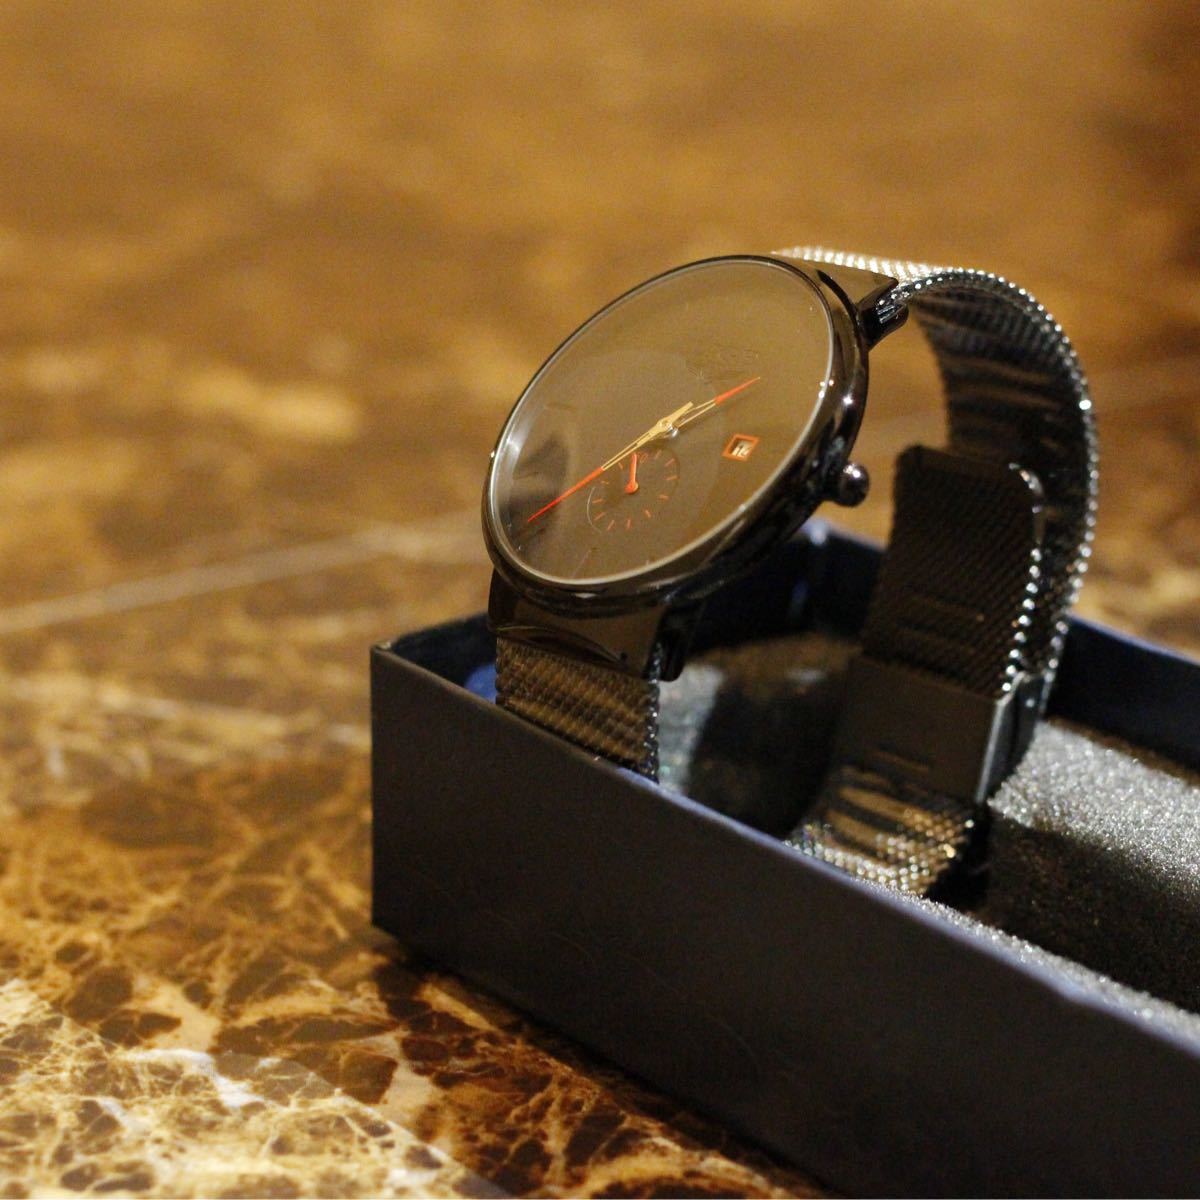 腕時計 メンズ腕時計 高級腕時計 新品 人気 バレンタイン 海外輸入品 メンズ 